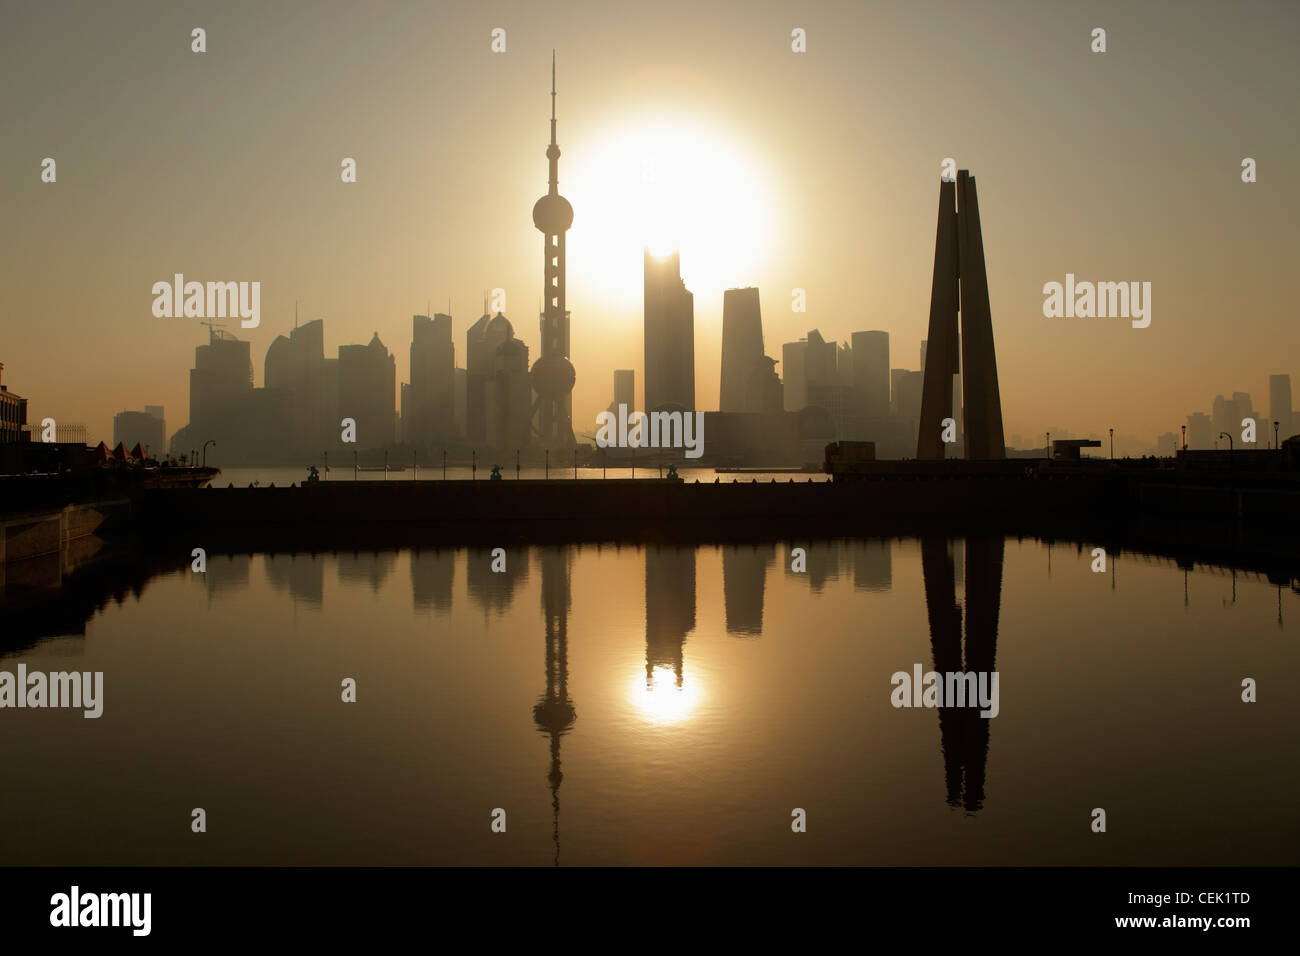 La ville de Shanghai skyline avec People's Heroes War Memorial en premier plan, reflétée dans l'eau au lever du soleil. Chine Banque D'Images